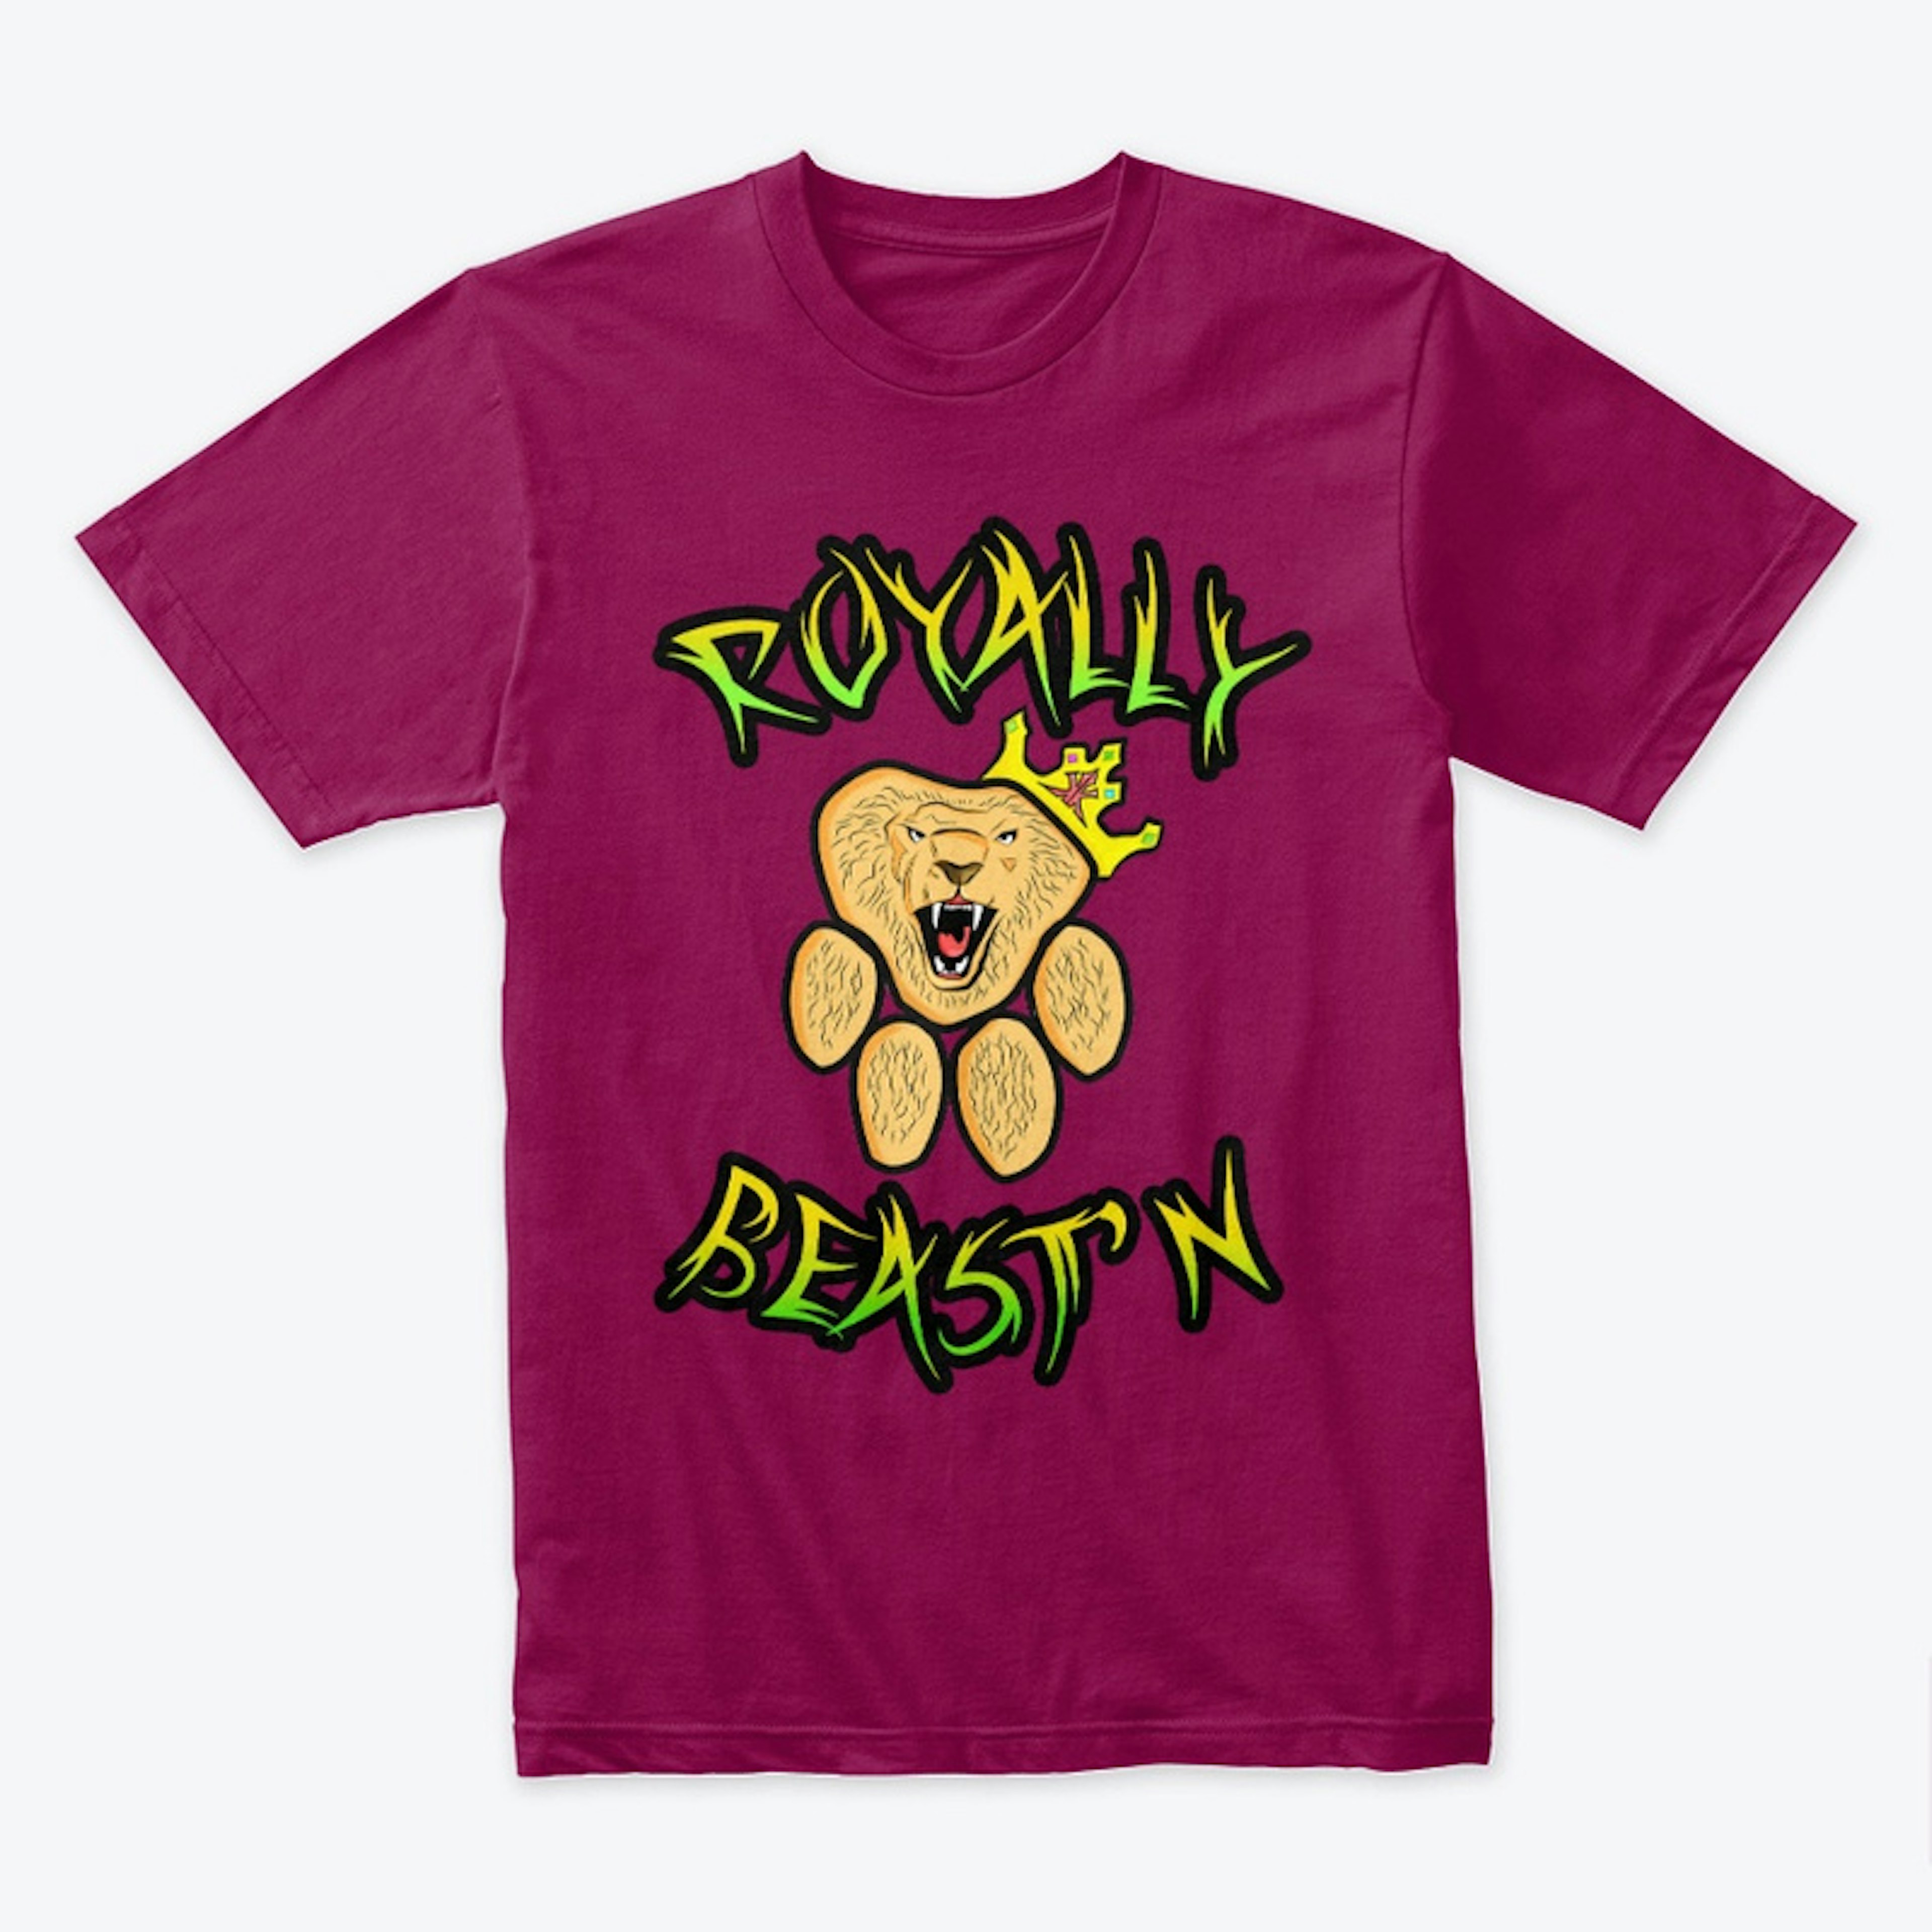 Royally Beast'n